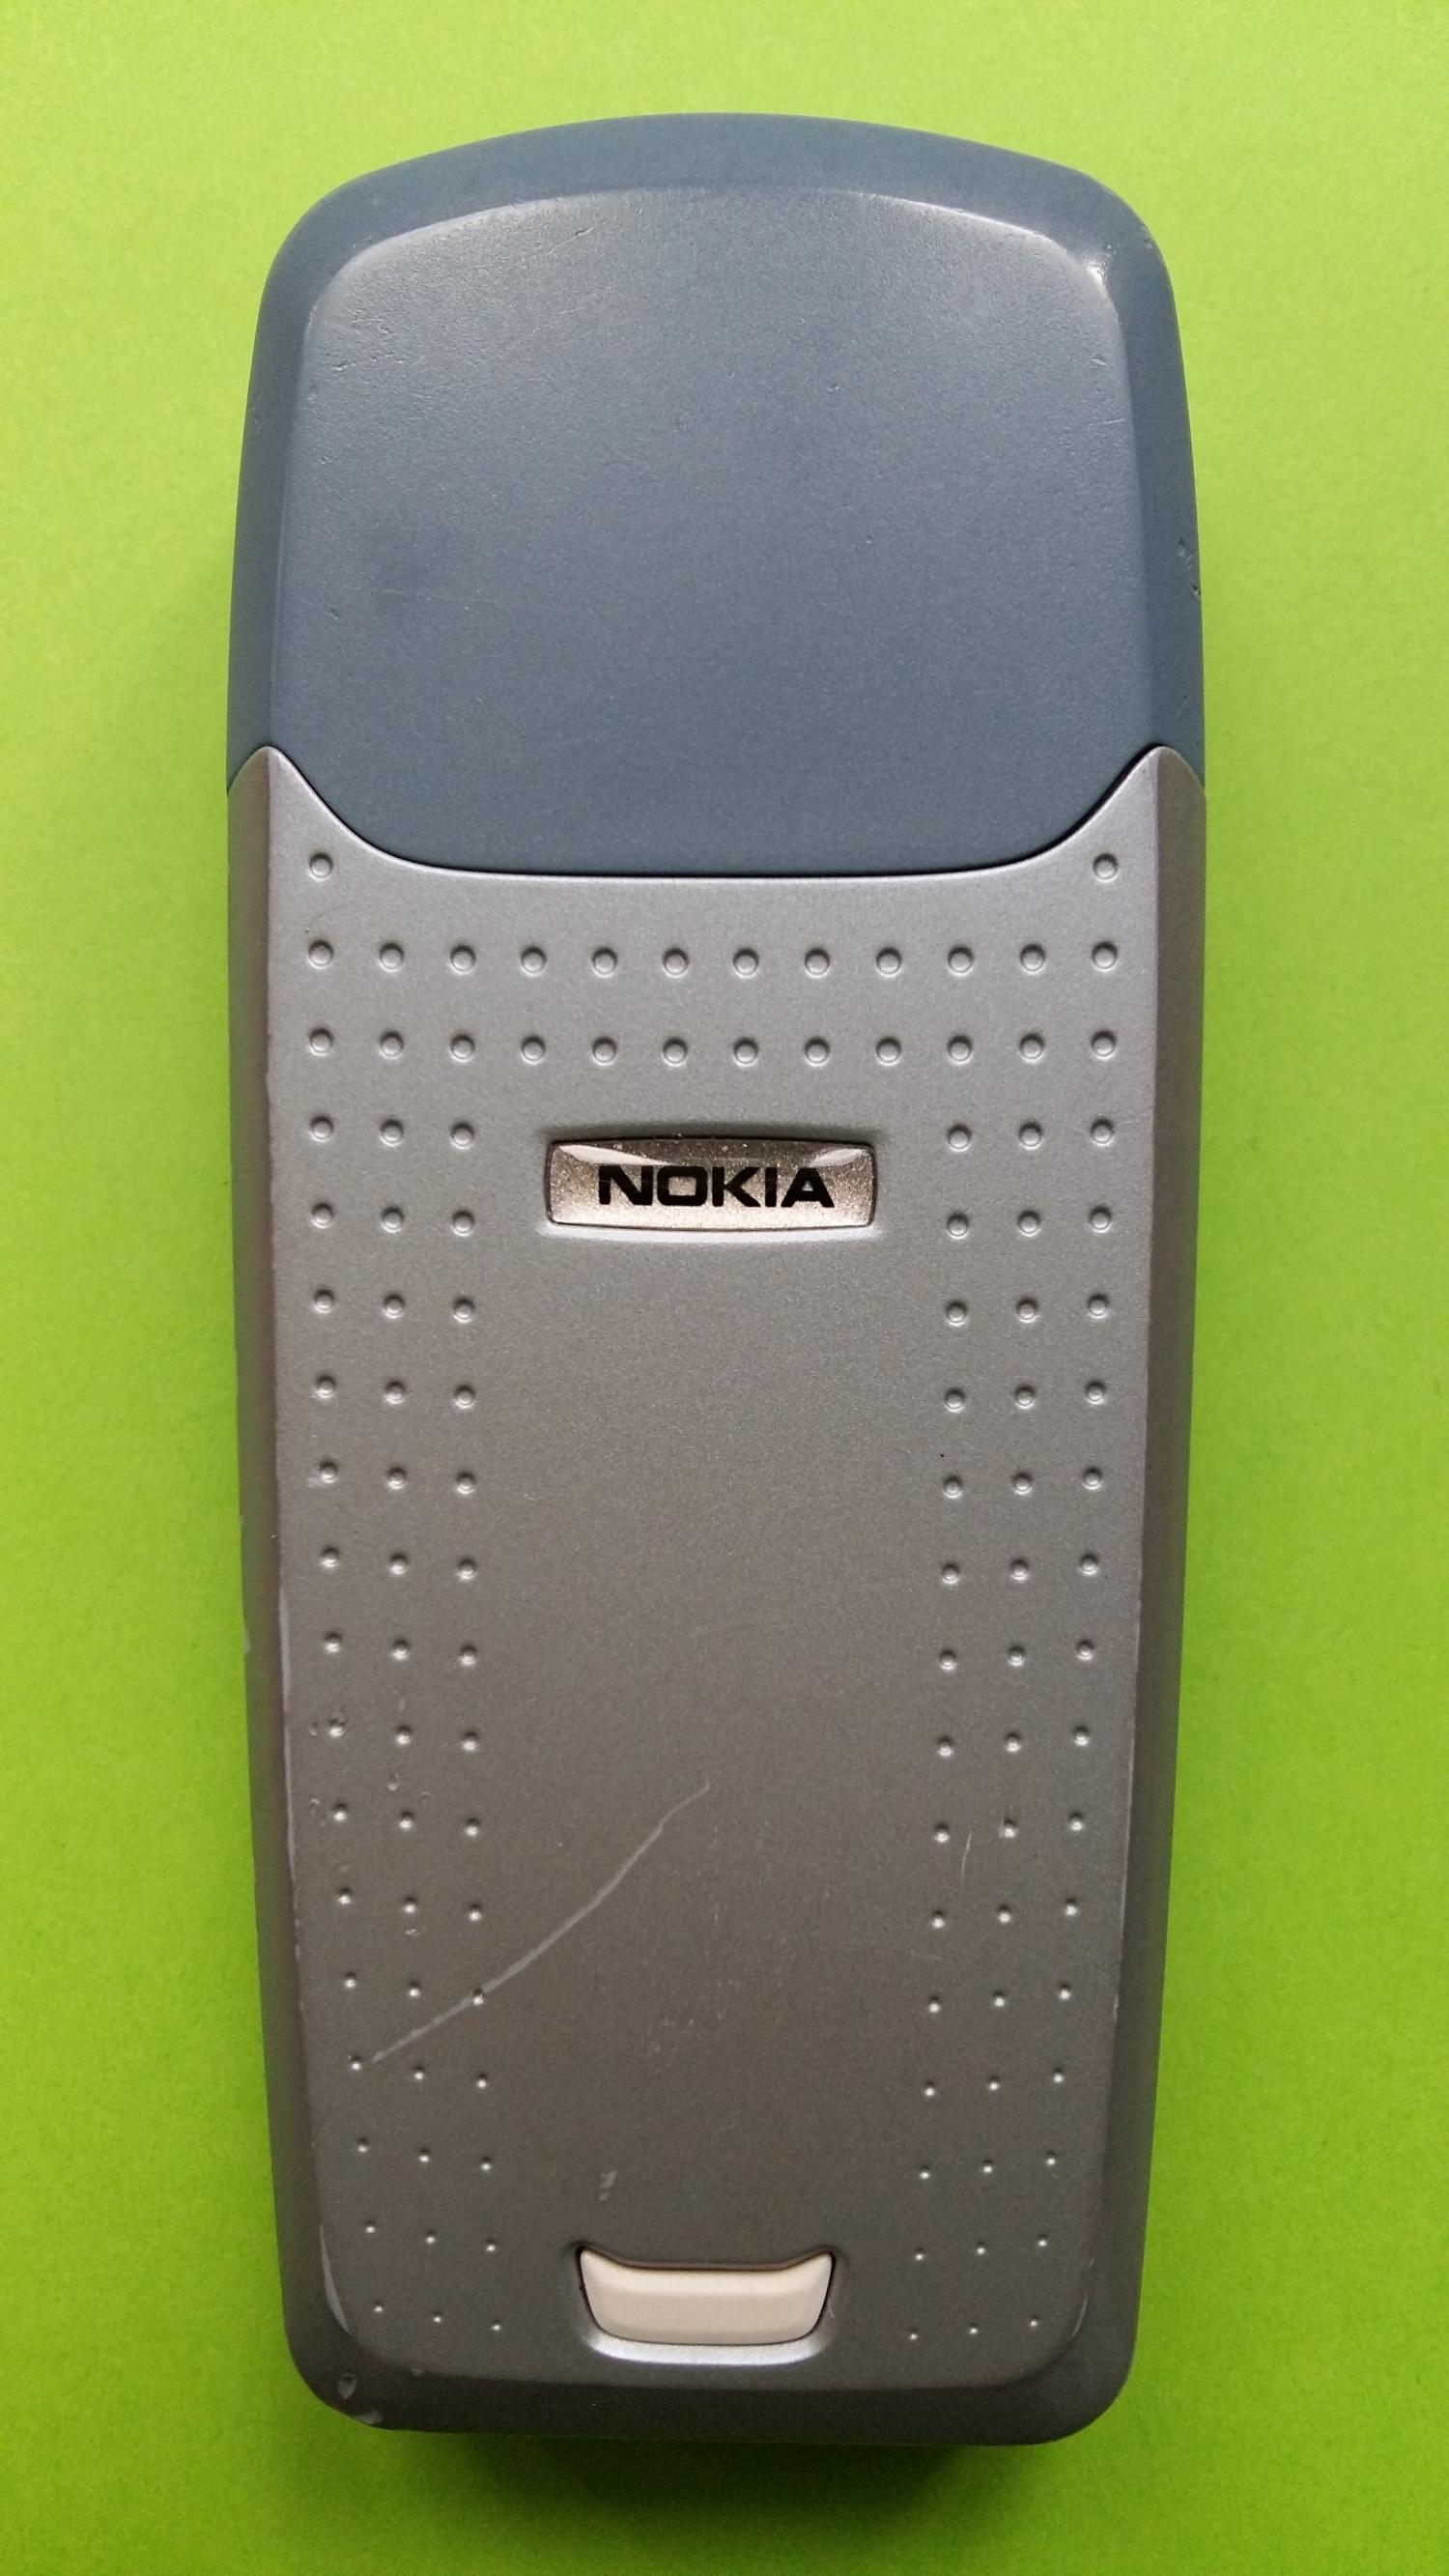 image-7304706-Nokia 3120 (1)2.jpg